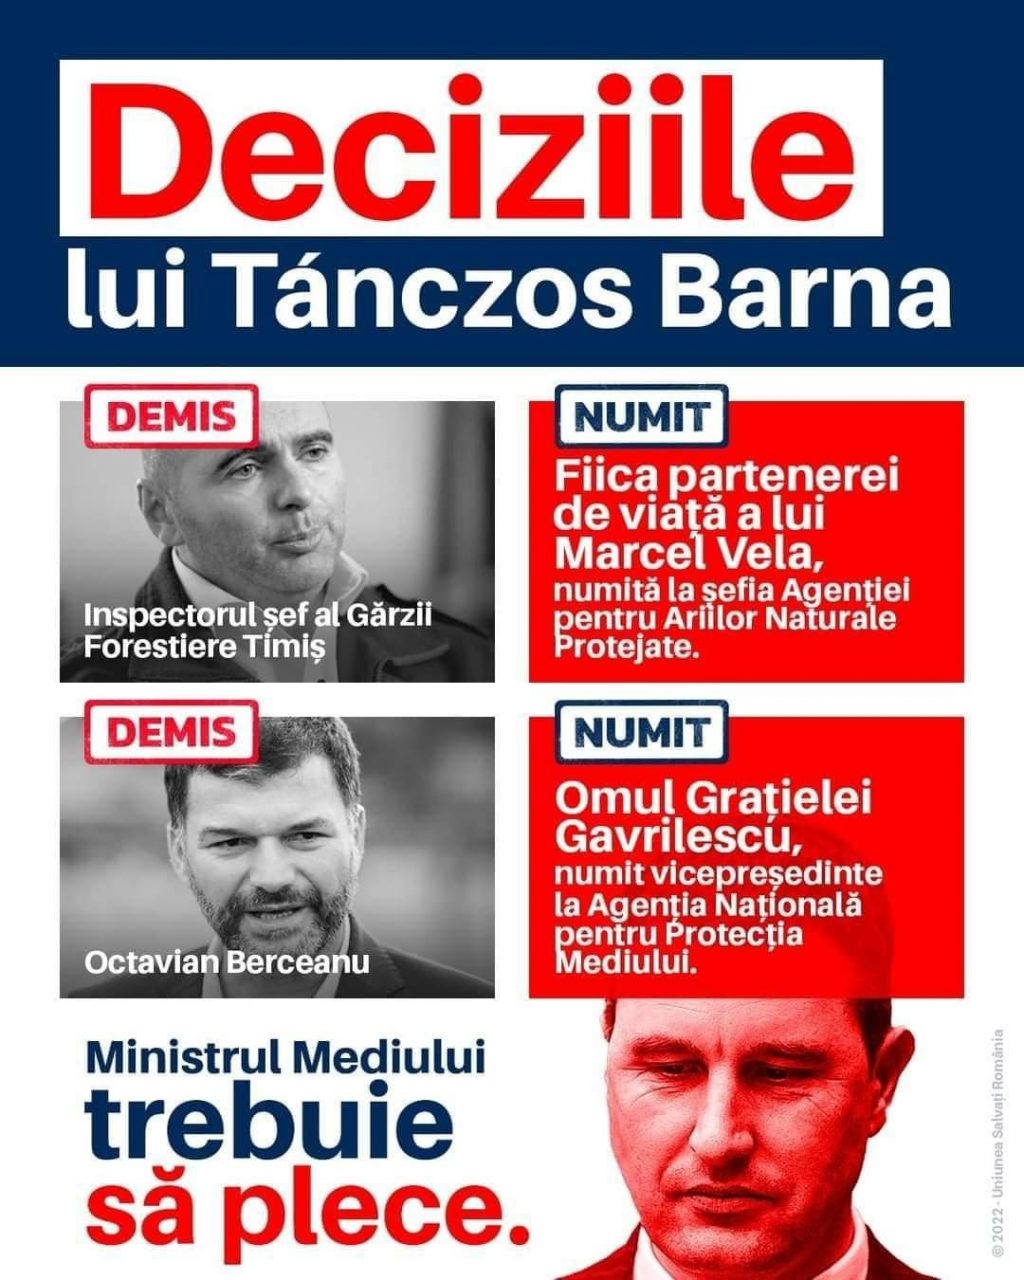 USR Timiş îl acuză pe Tanczos Barna de practici mafiote